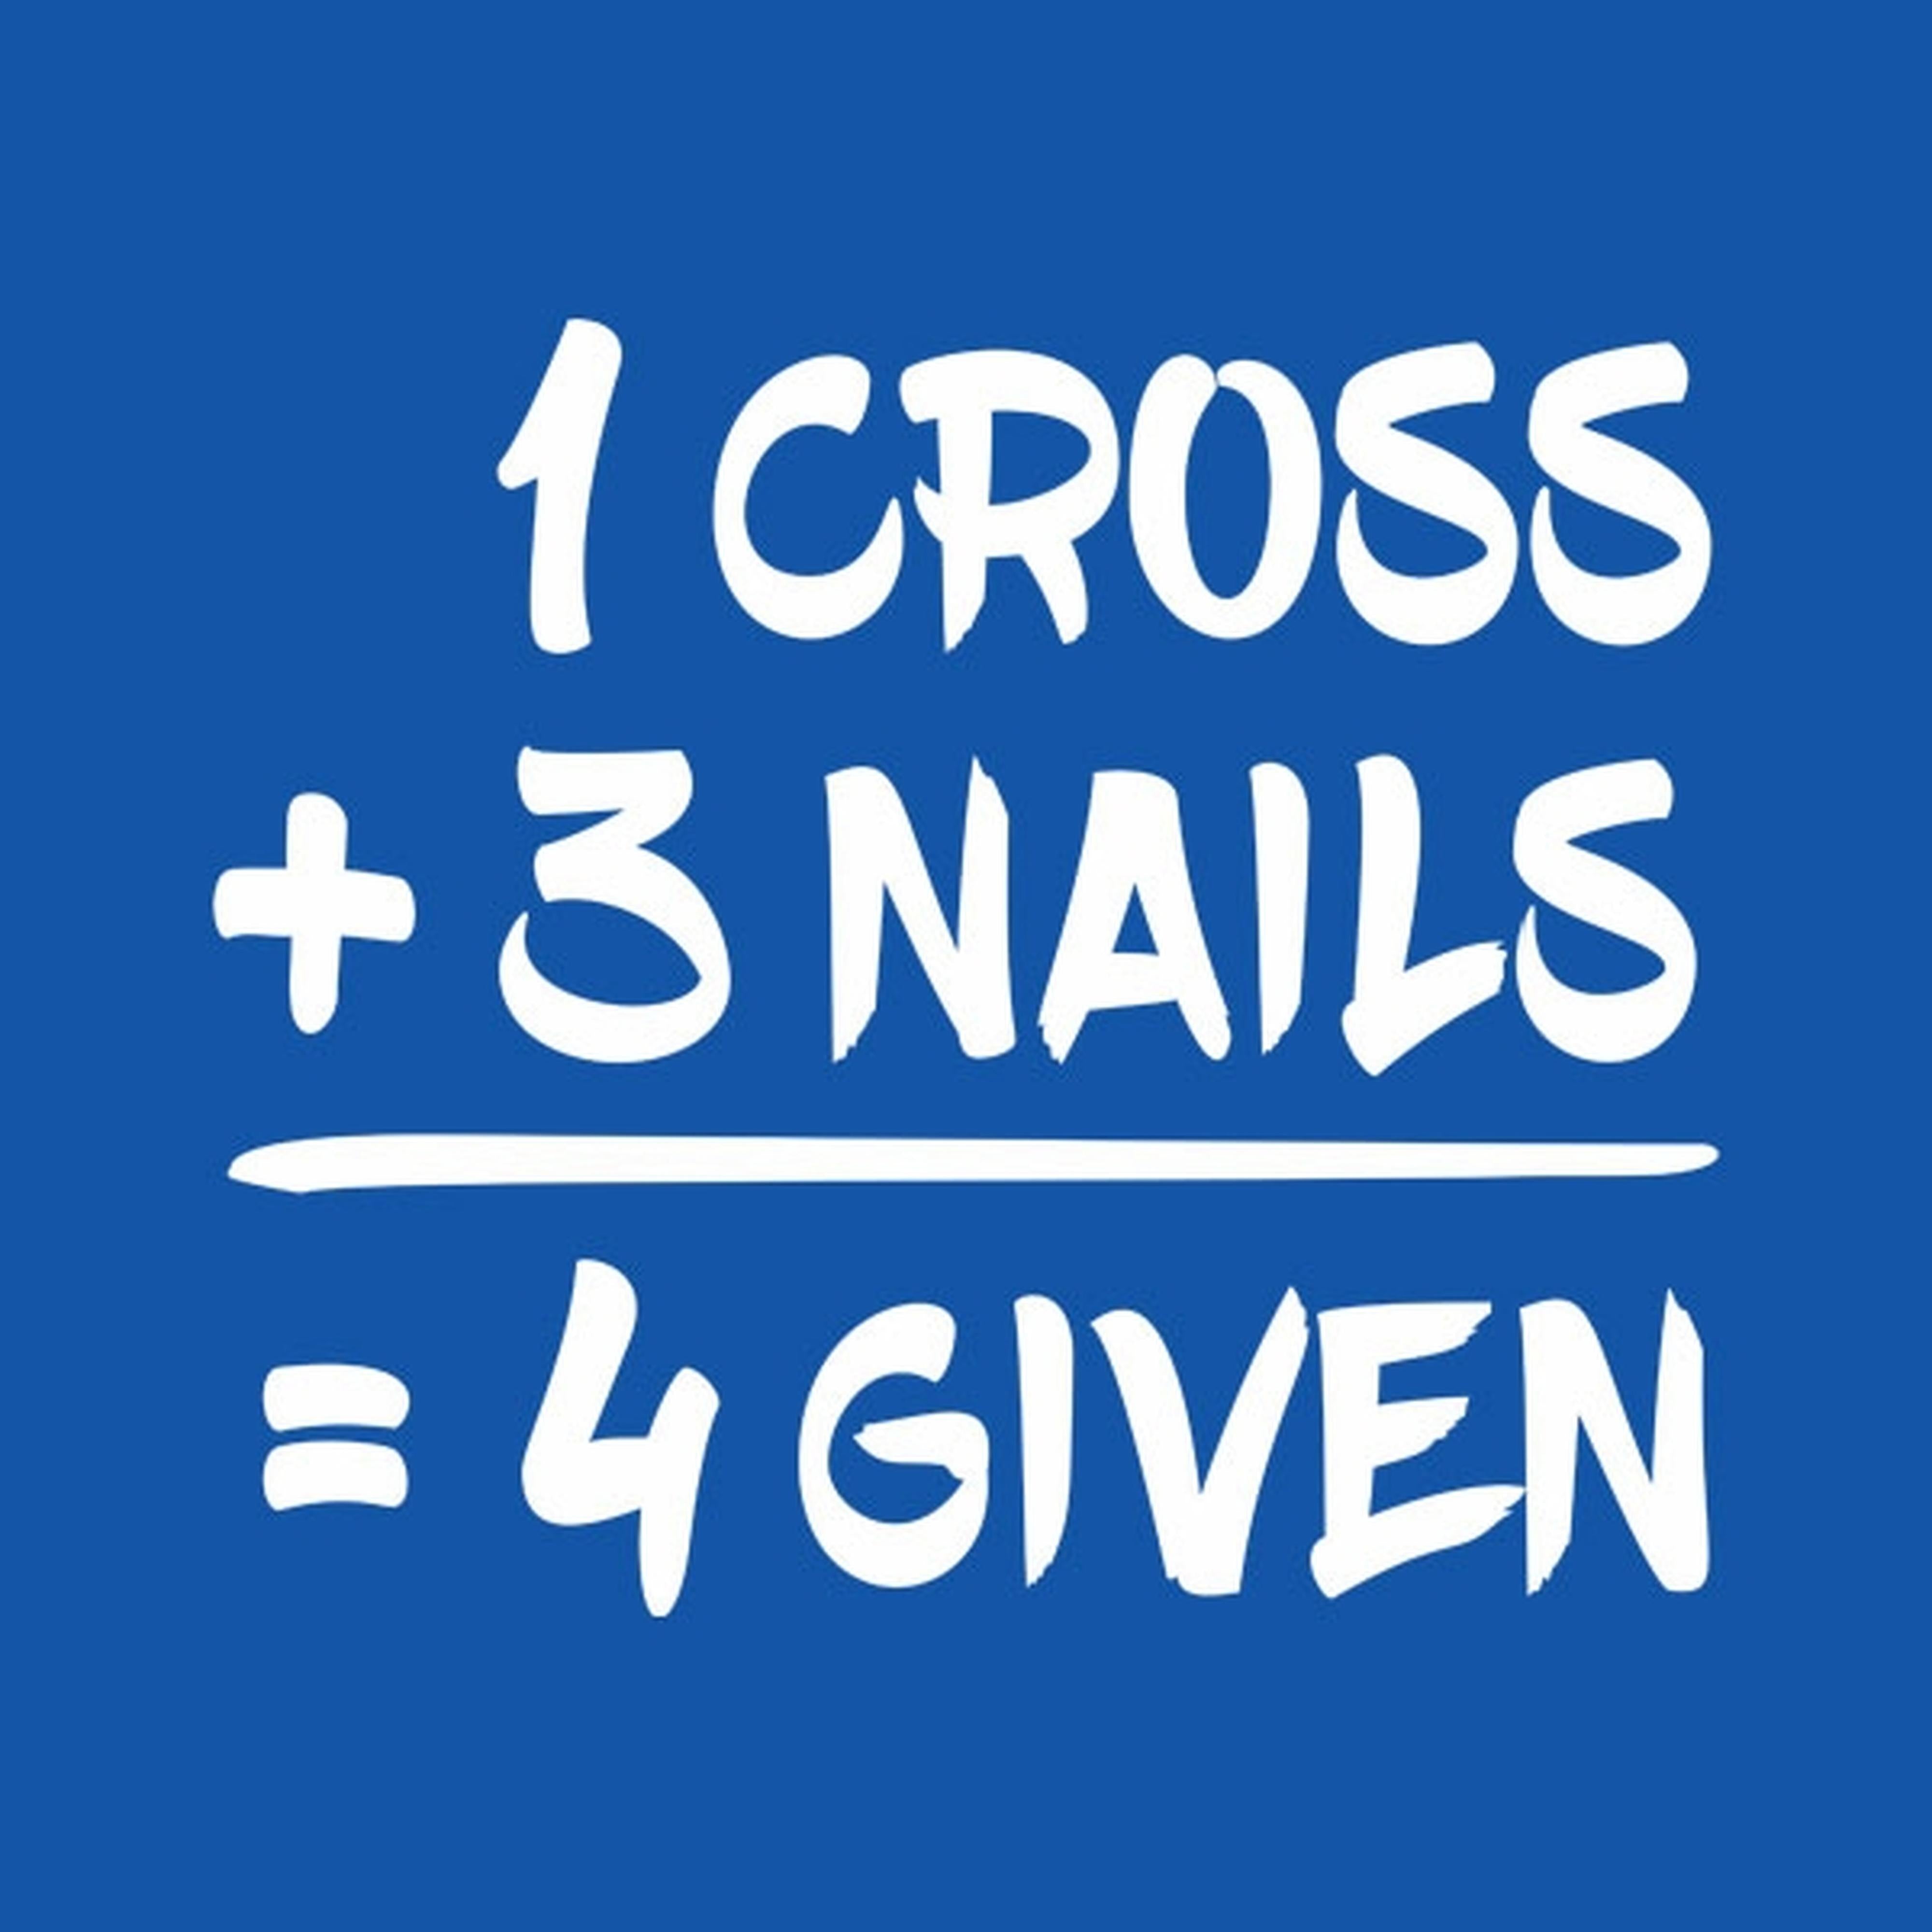 1 Cross + 3 Nails = 4given - T-shirt